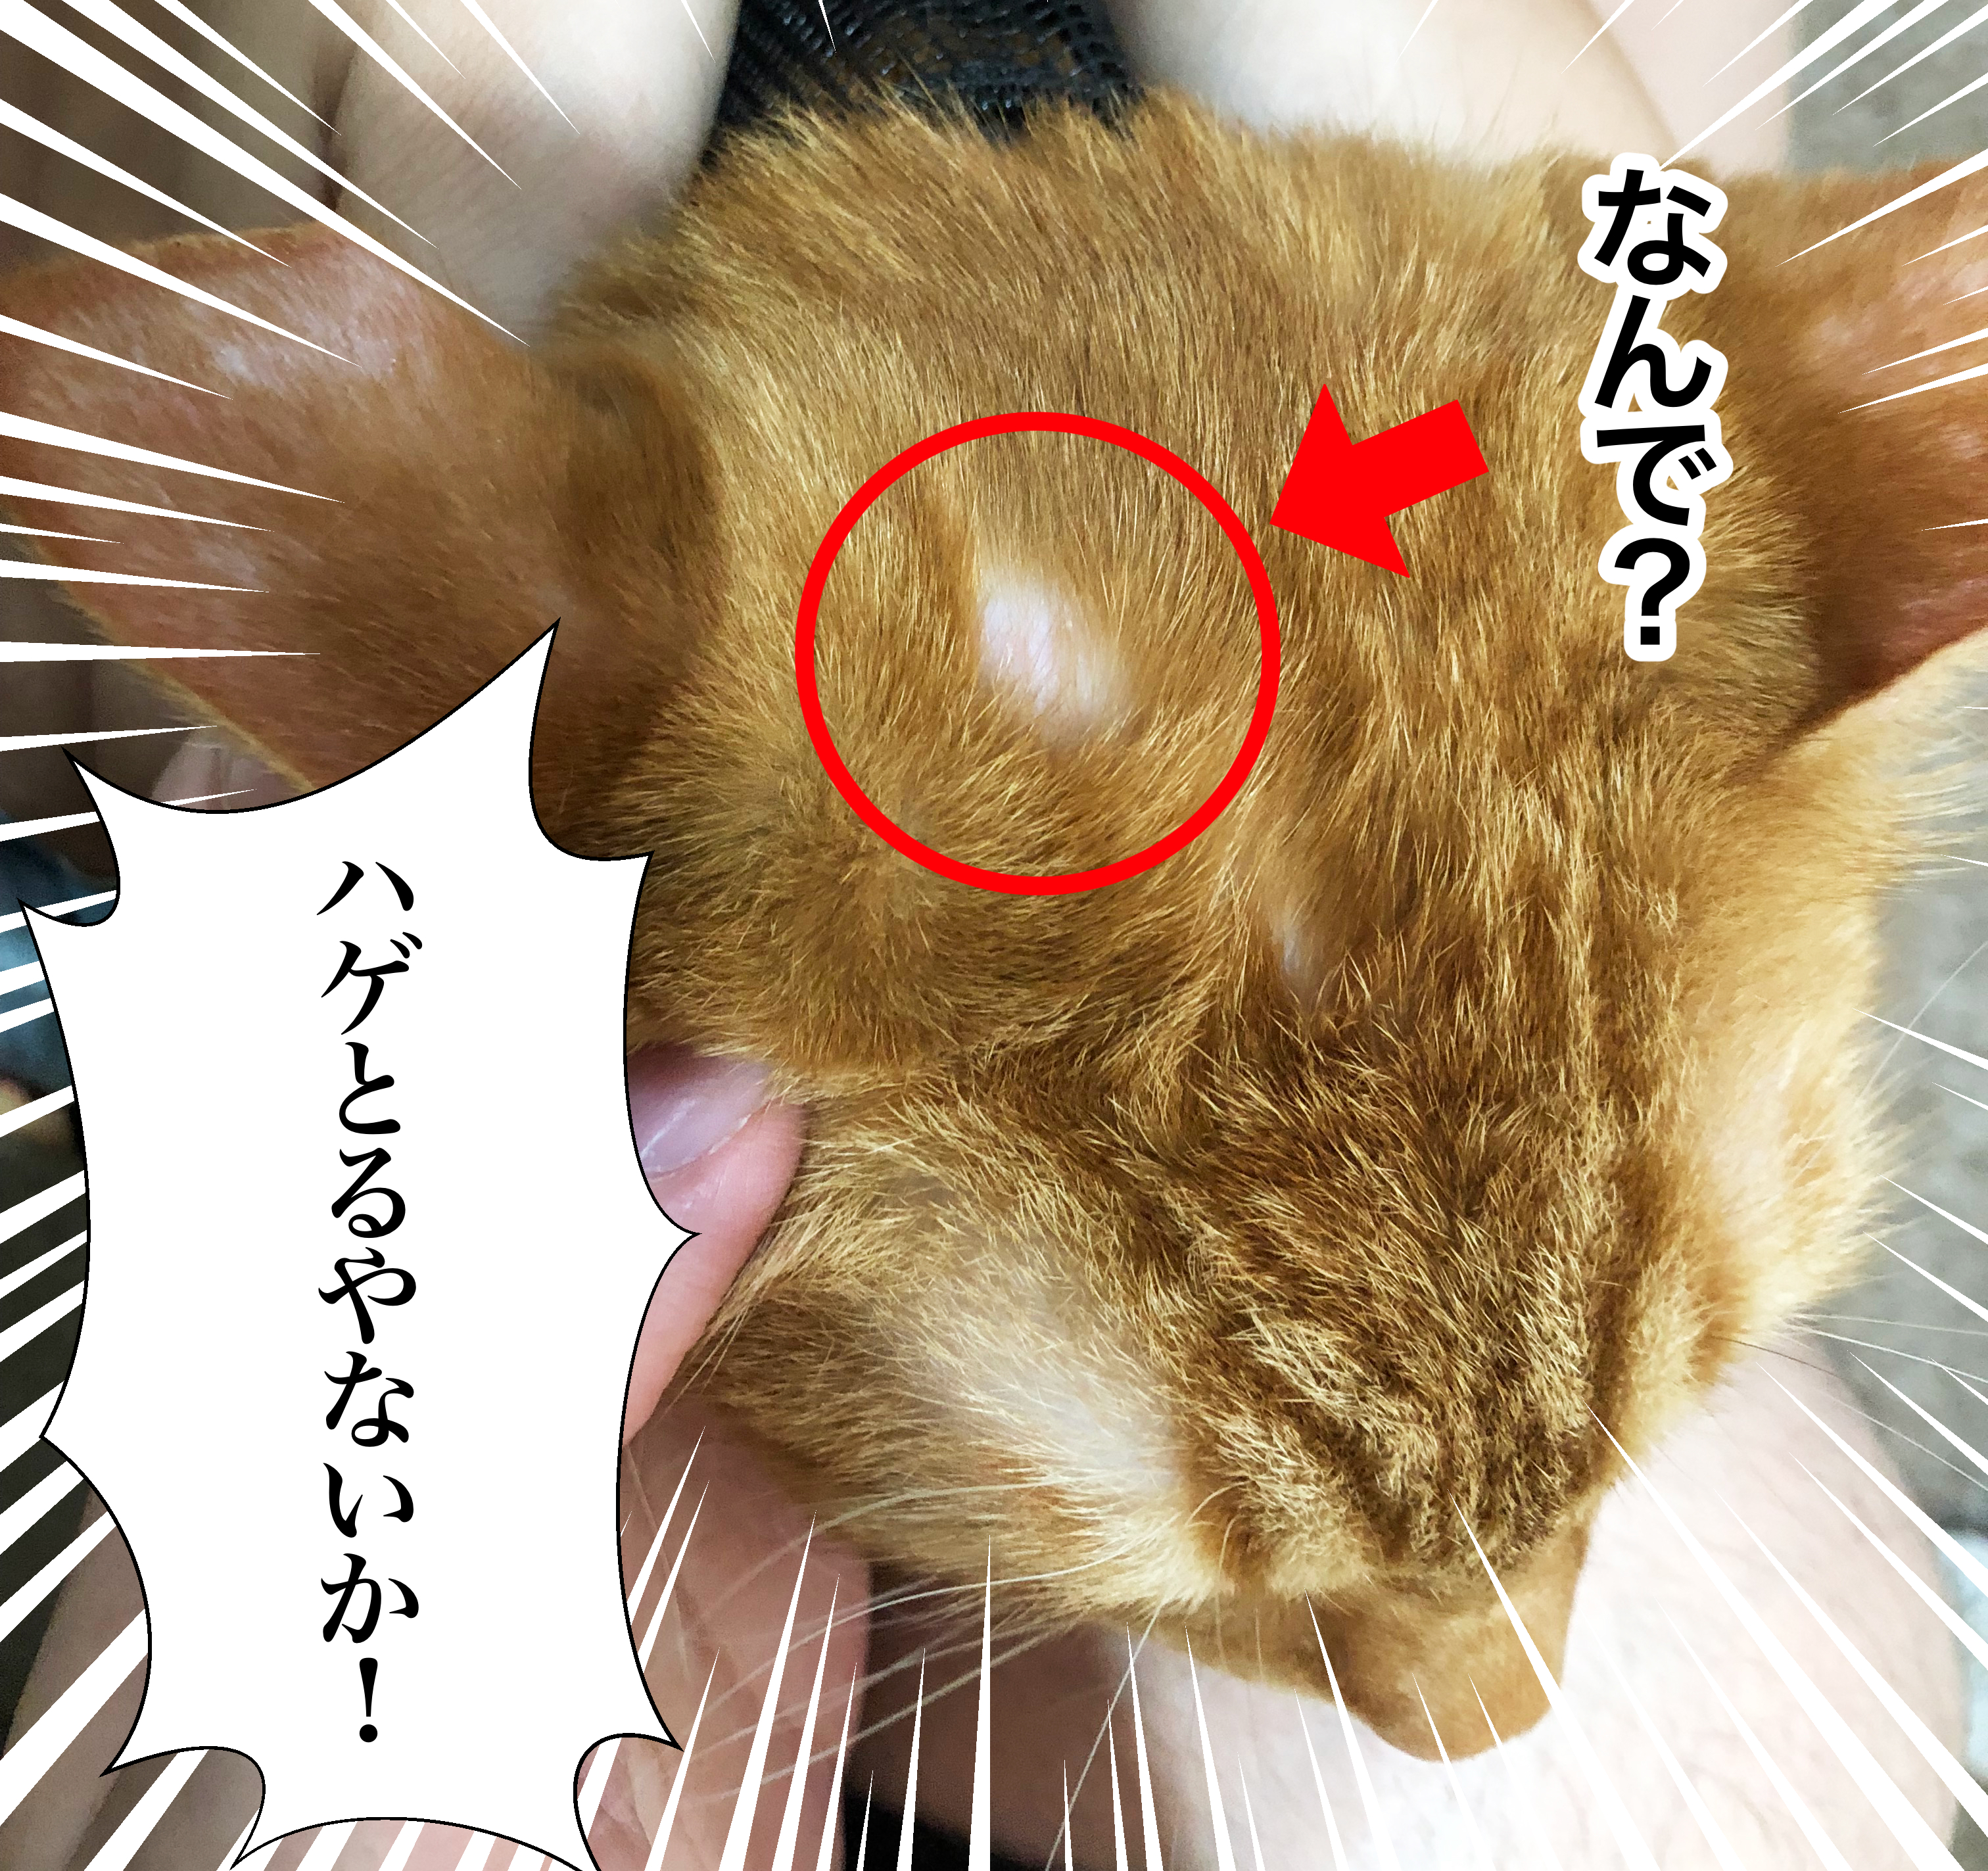 【猫カビ治療日記①】愛猫のまるに10円ハゲができた...その原因はカビかも...